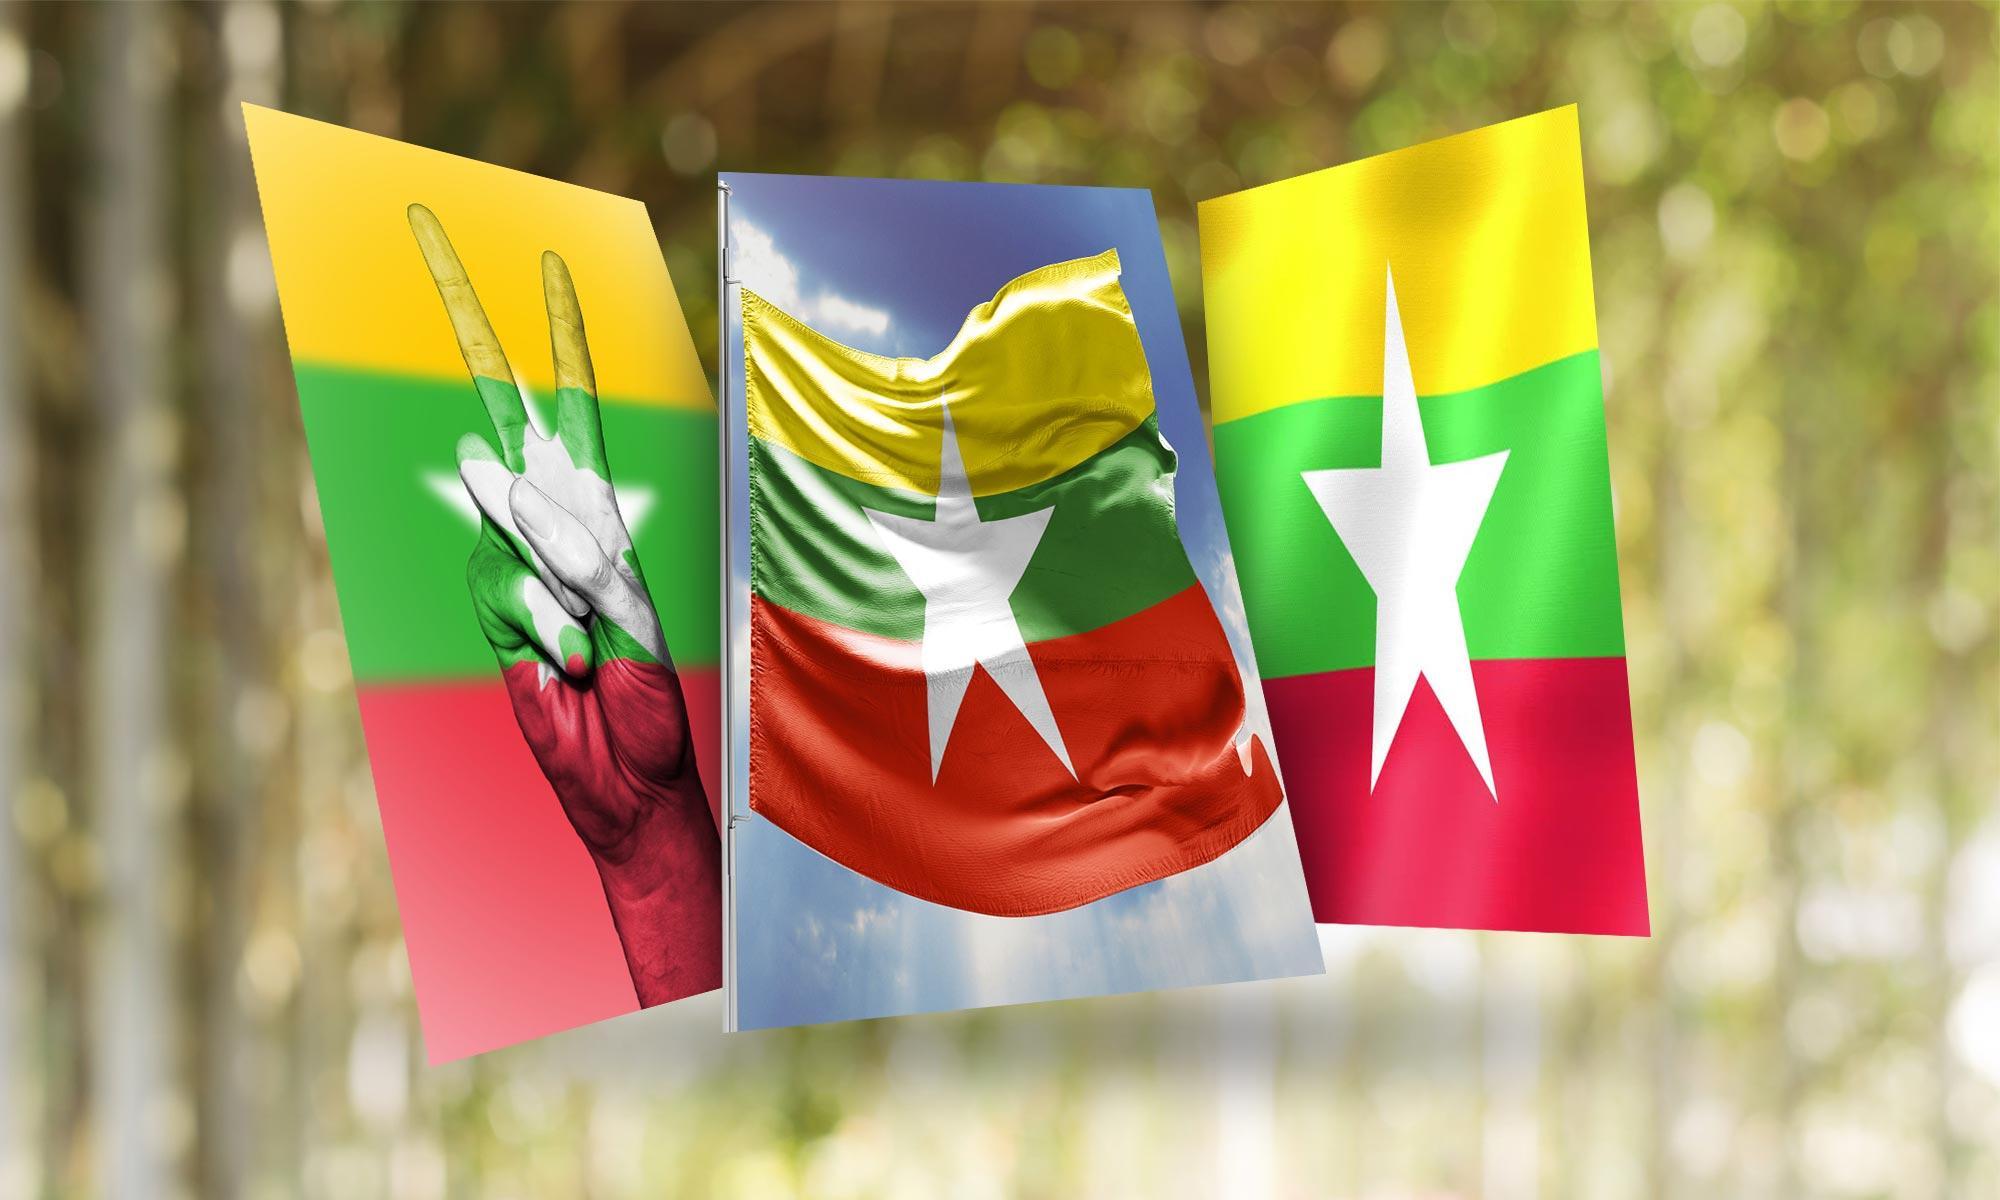 Quốc kỳ Myanmar: Nâng cao trình độ kiến thức của bạn về văn hóa và lịch sử của Myanmar với hình ảnh quốc kỳ của quốc gia Đông Nam Á này. Sử dụng hình ảnh này để trang trí thiết bị hoặc bài viết của bạn và hiển thị tình yêu cho quốc gia này một cách rõ ràng.